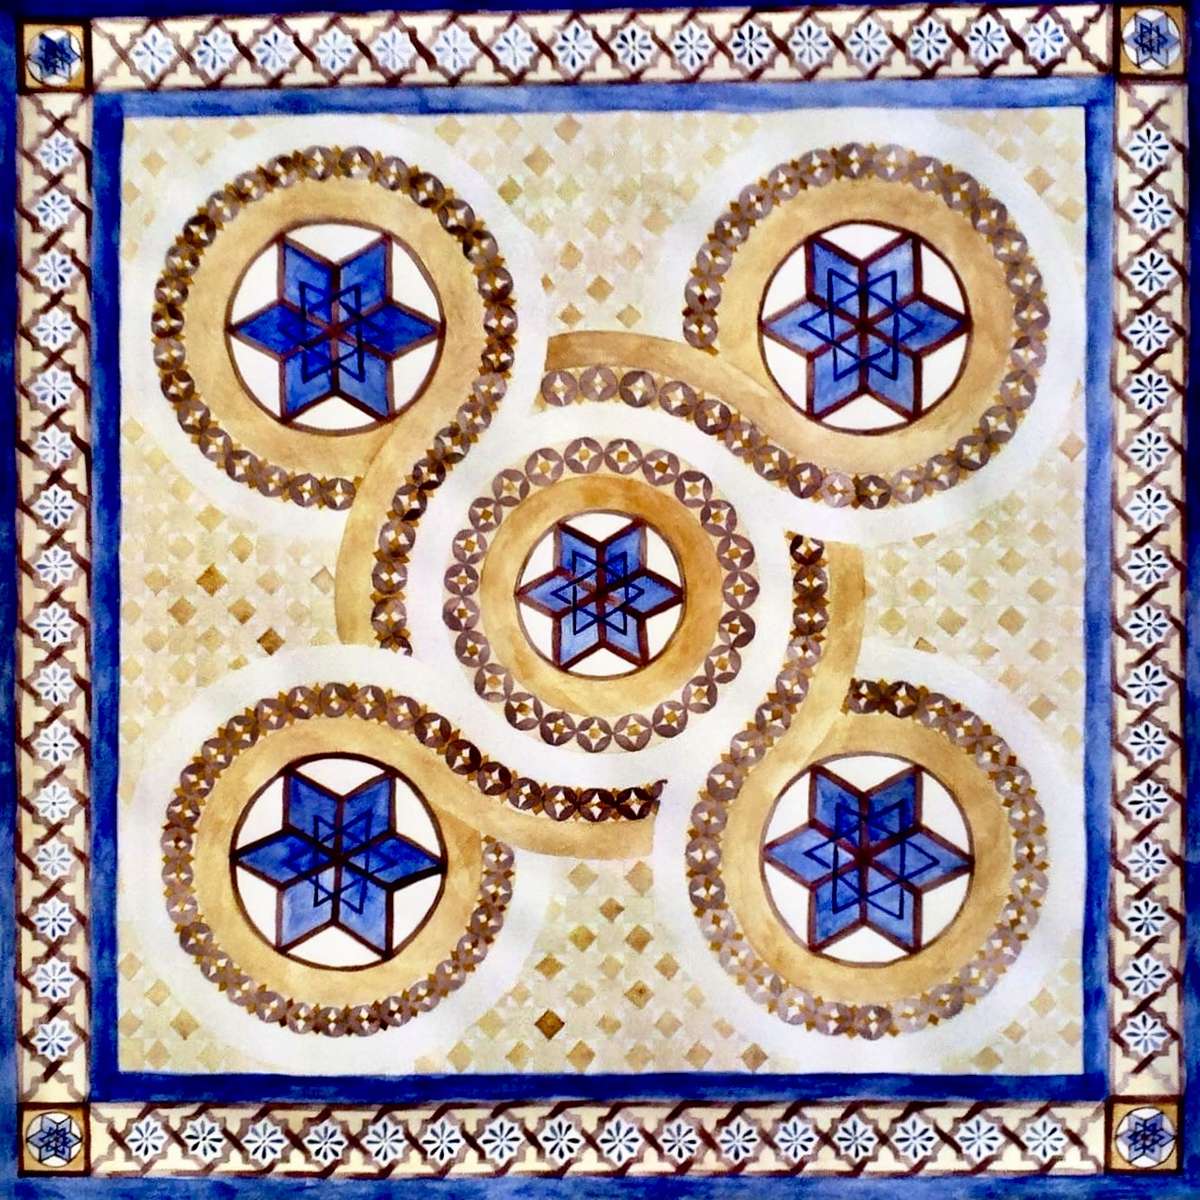 Puzzel op de vloer van de tempel online puzzel